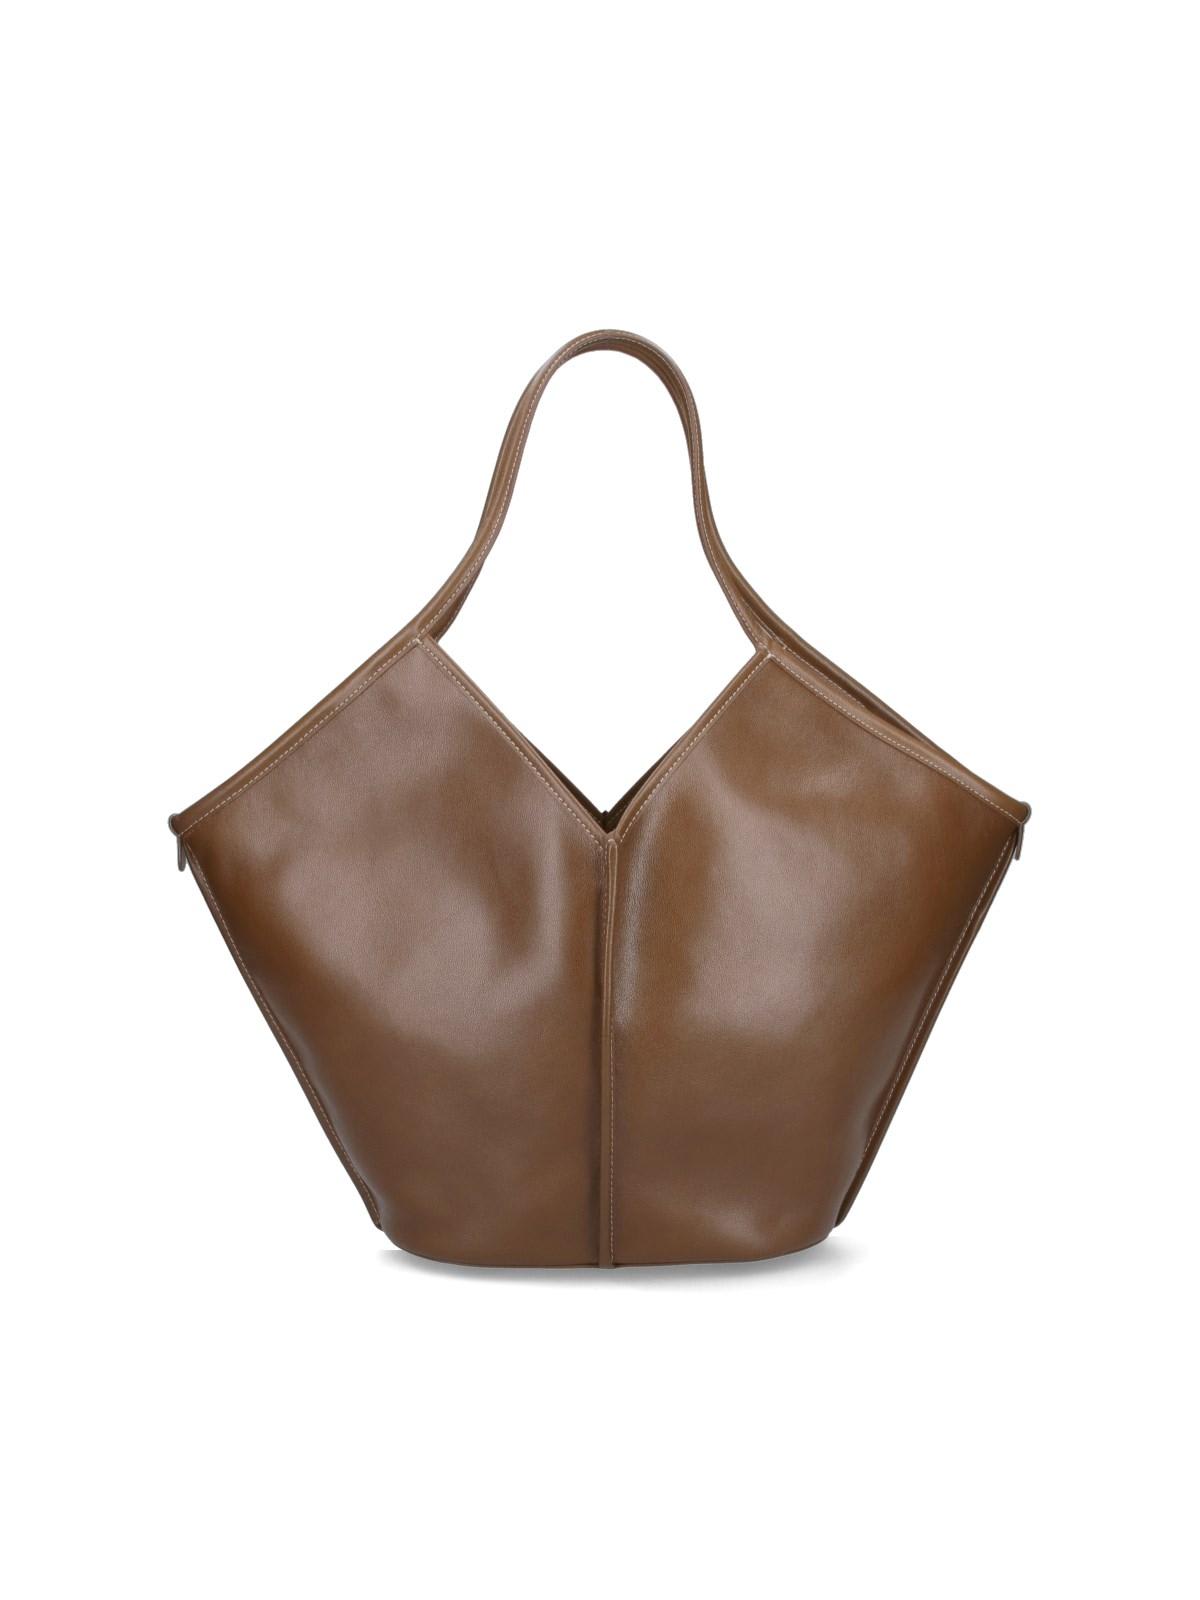 HEREU Calella Distressed Leather Tote Bag - Bergdorf Goodman